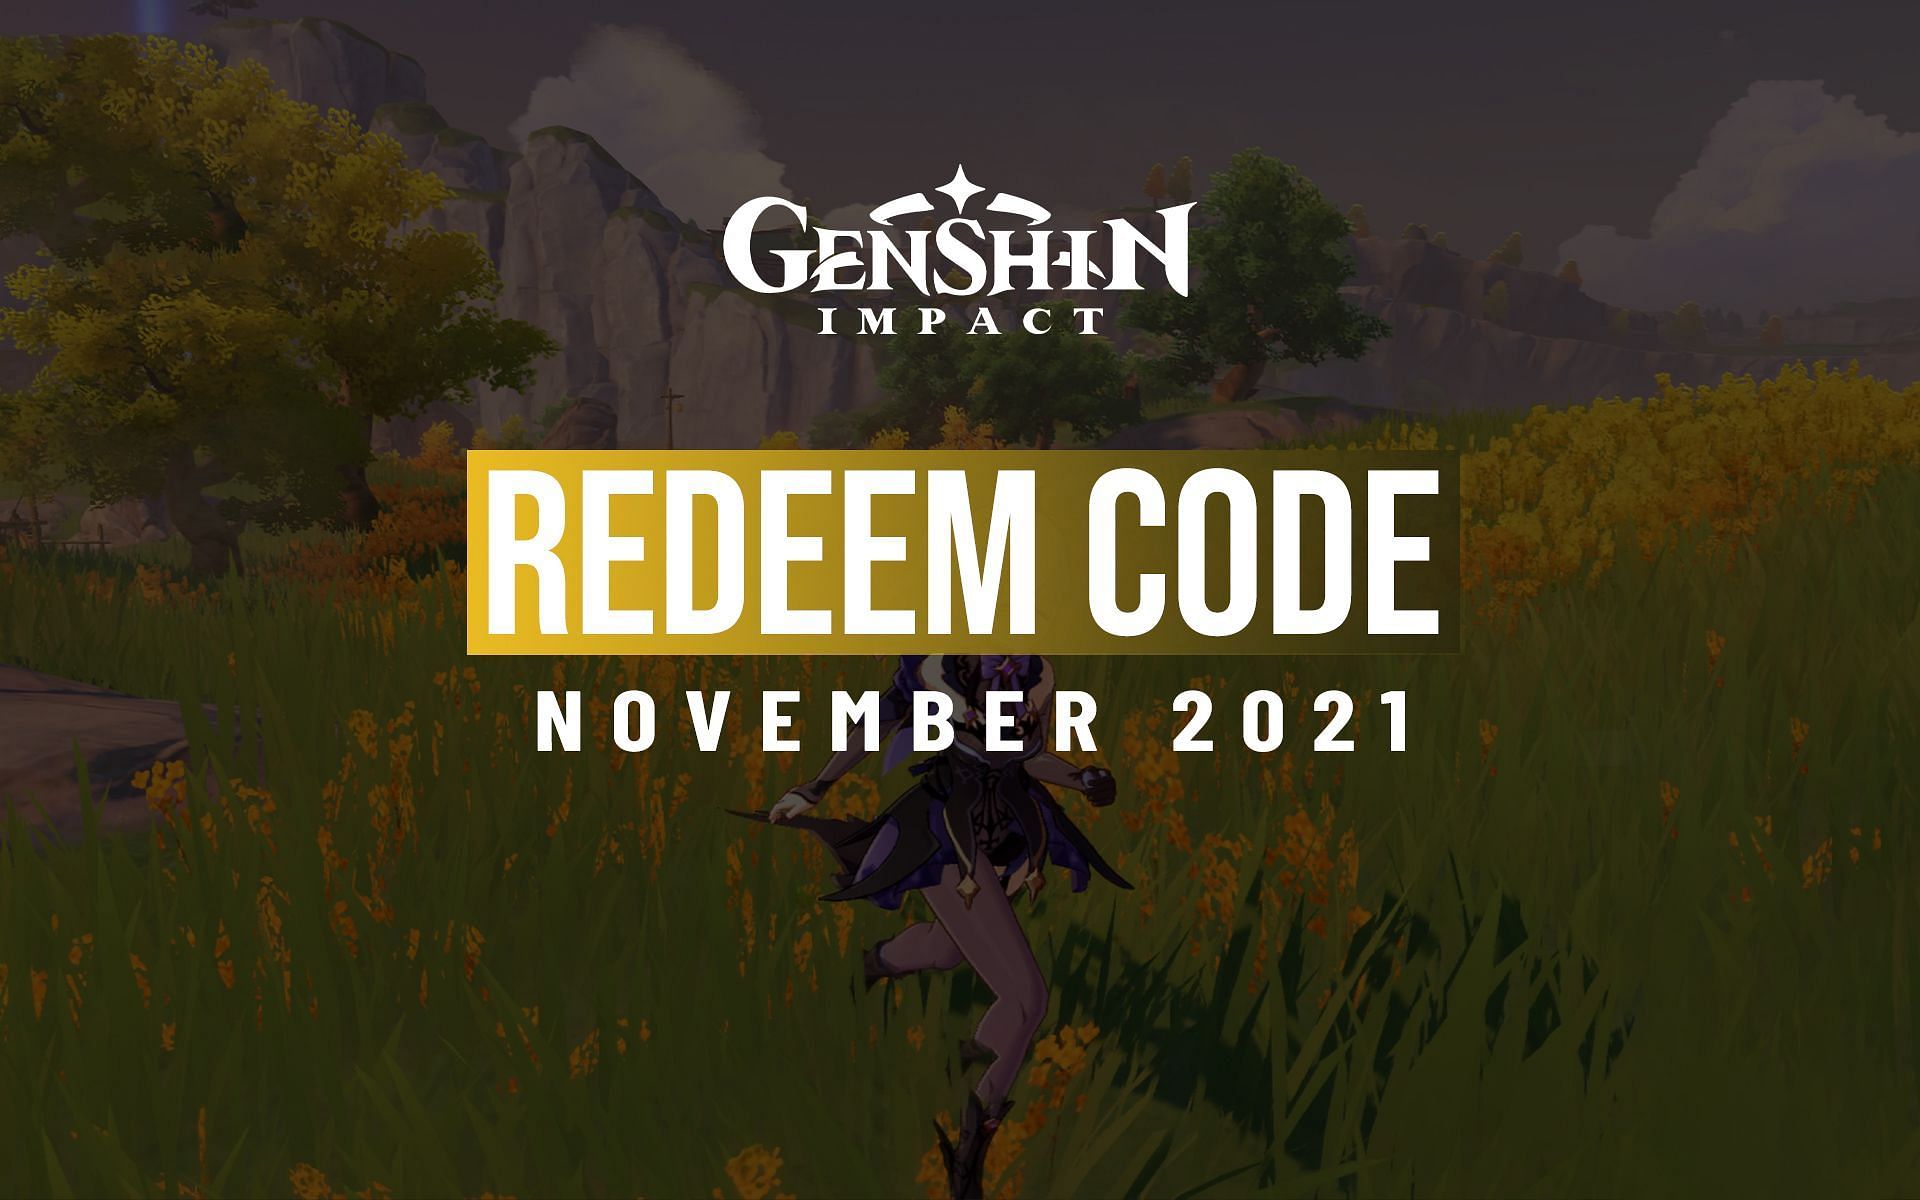 Redeem code for Genshin Impact in November 2021 provides 60 Primogems (Image via Sportskeeda)